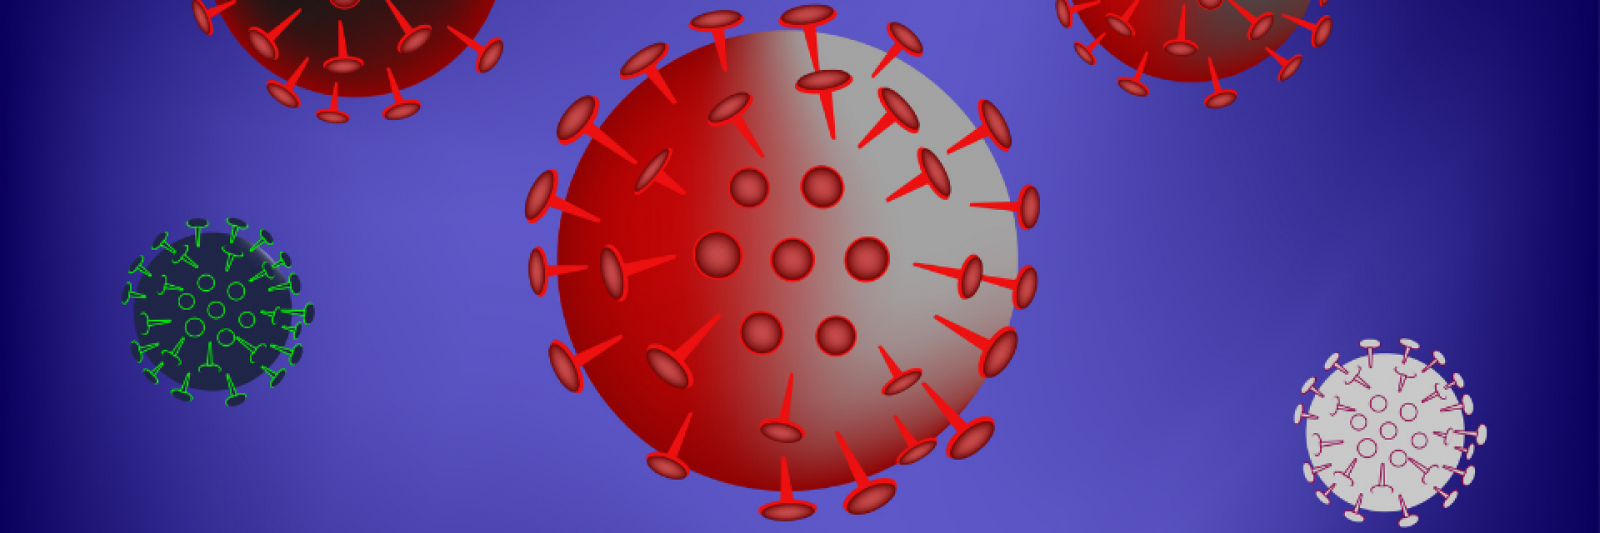 Illustrazione di vari virus